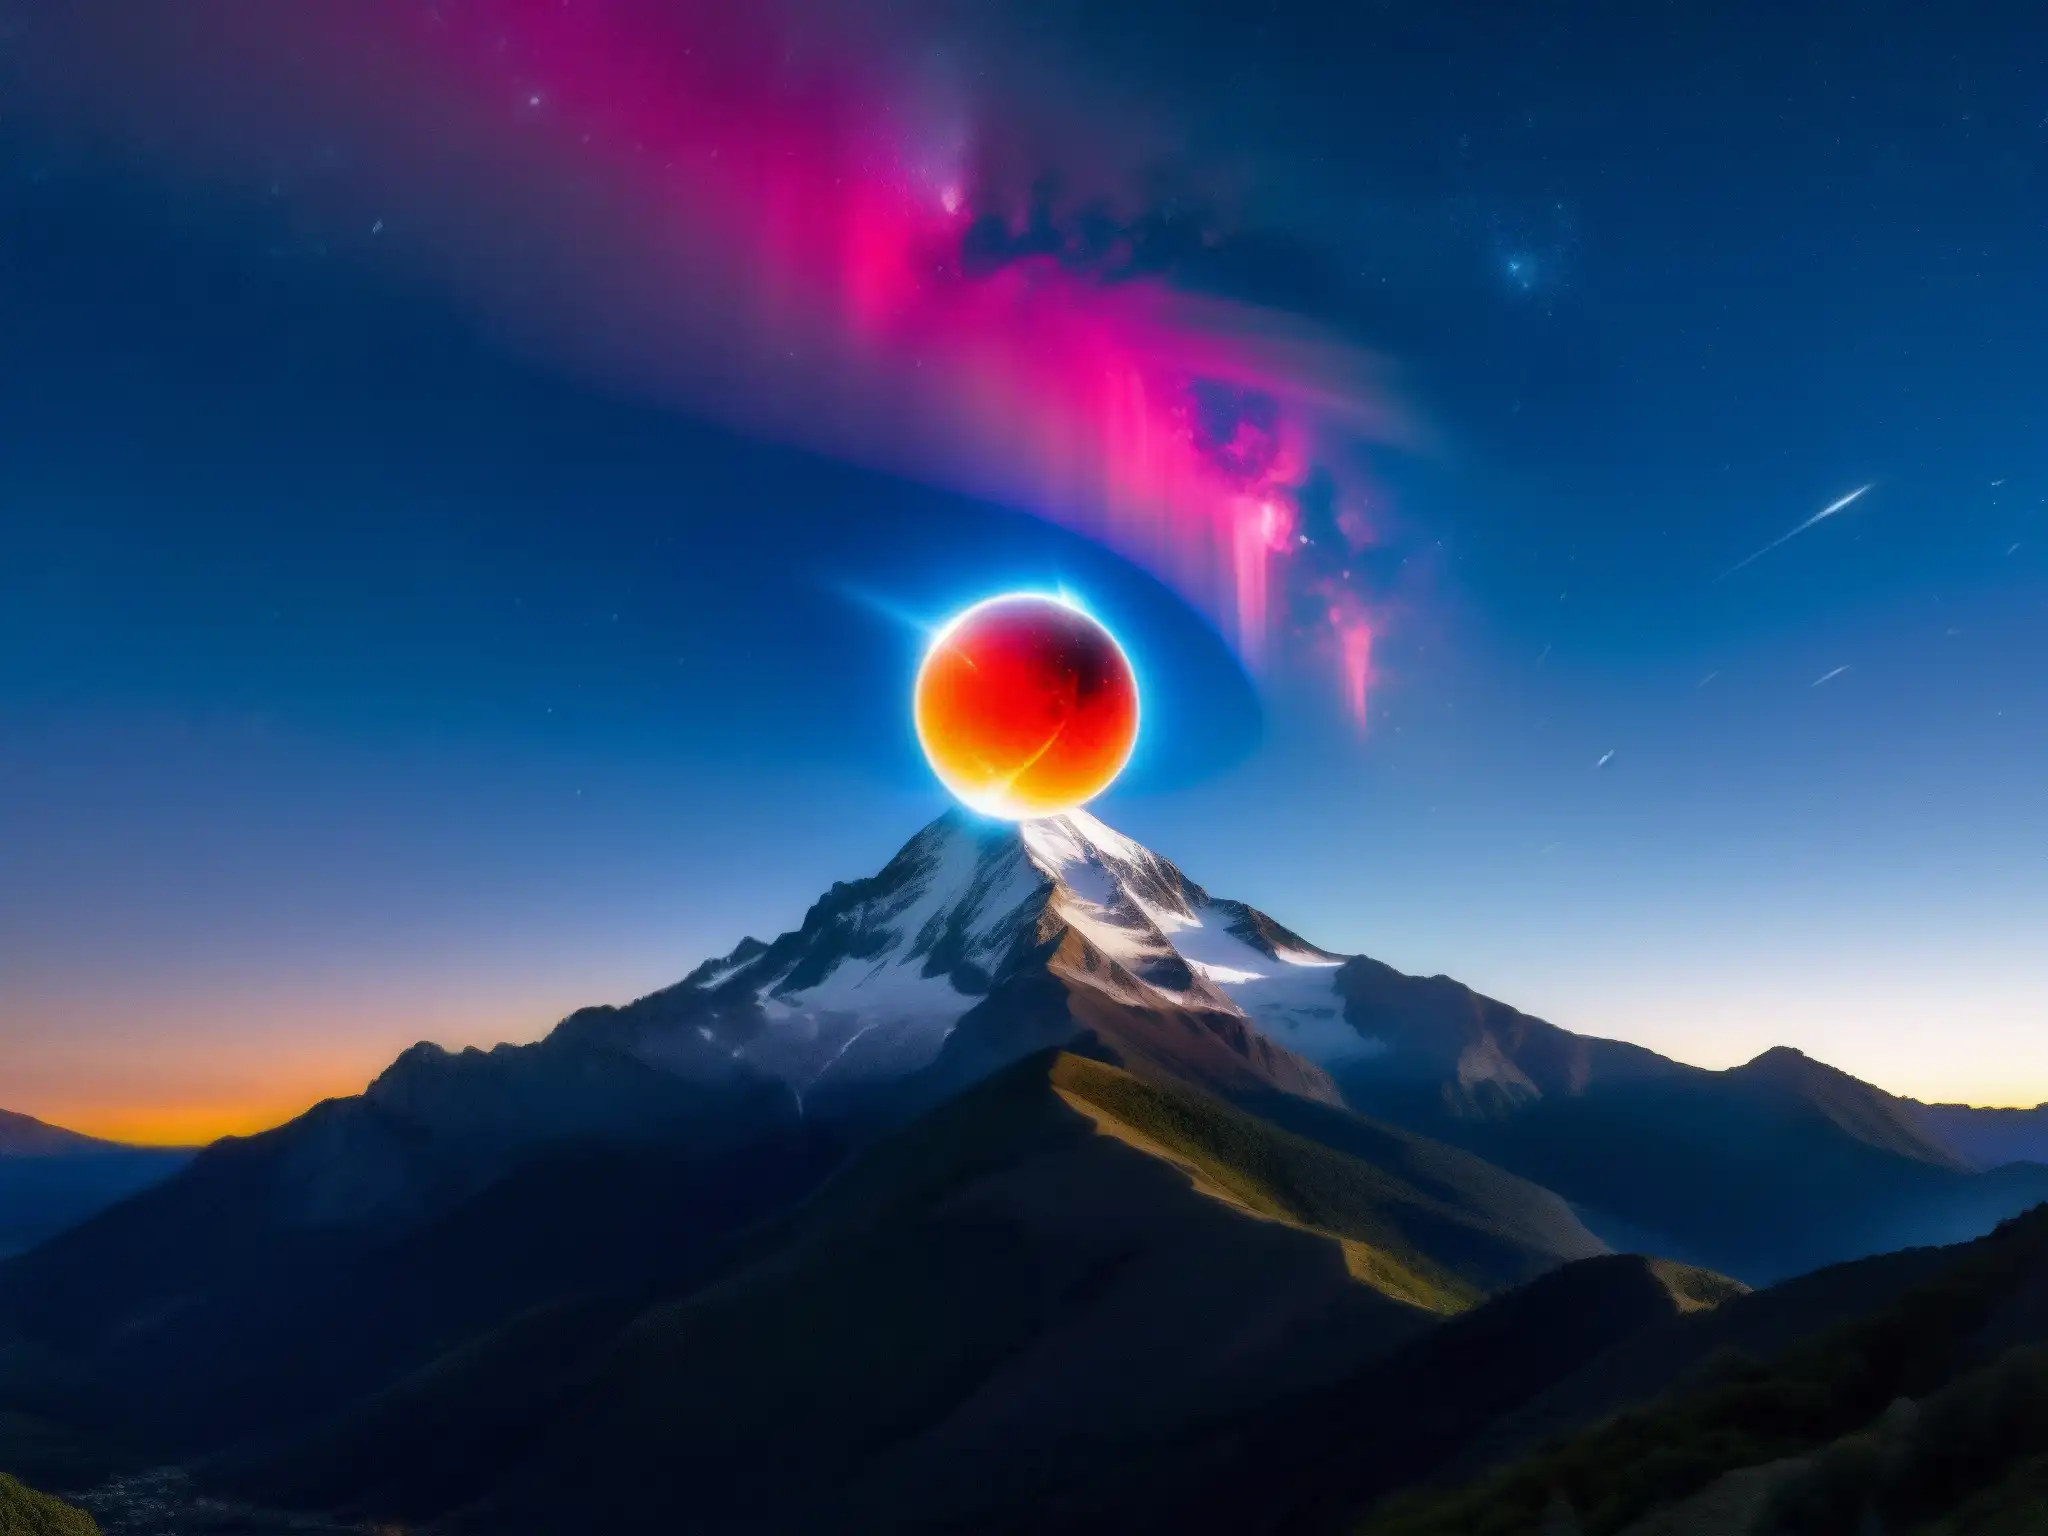 Una impresionante bola de fuego surca el cielo nocturno sobre un paisaje montañoso, captada por un astroturista